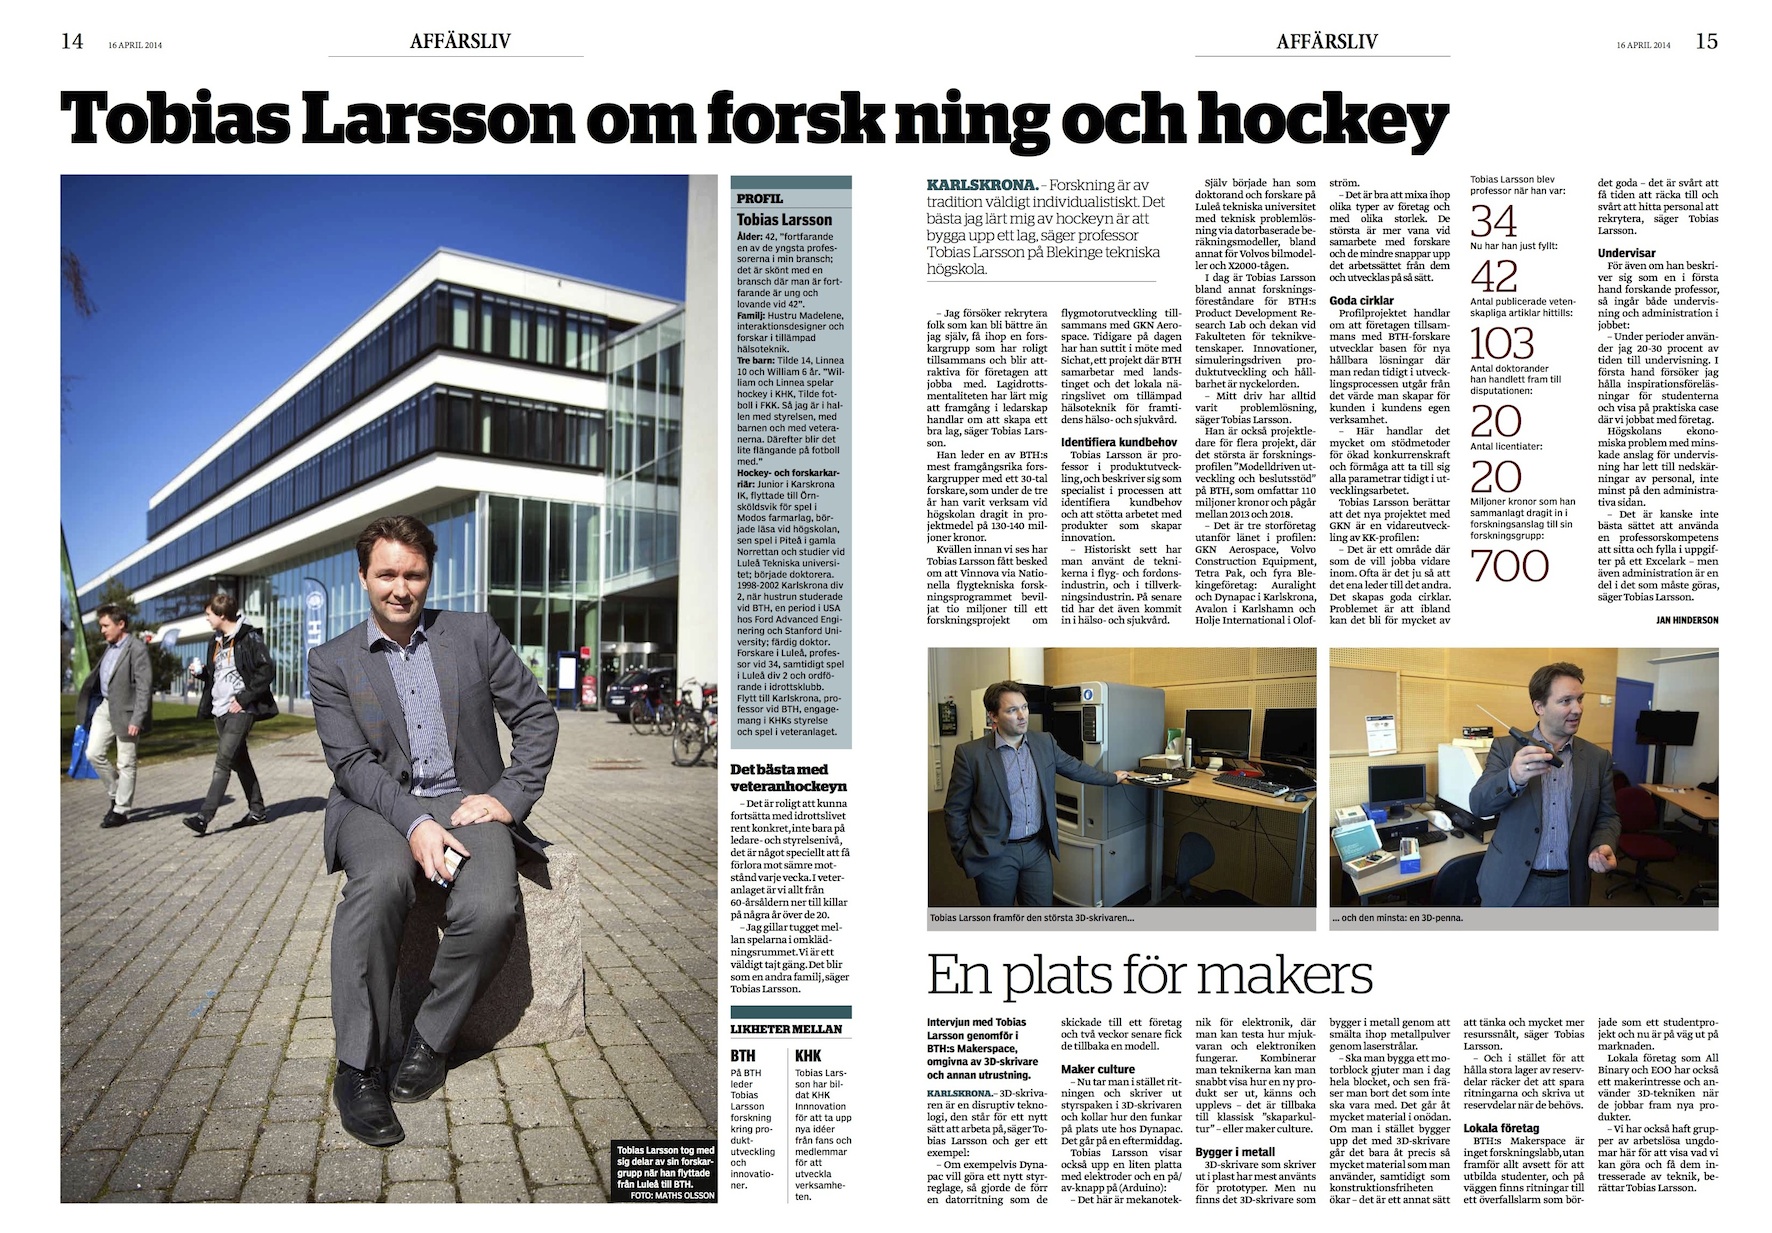 Tobias Larsson om forskning och hockey